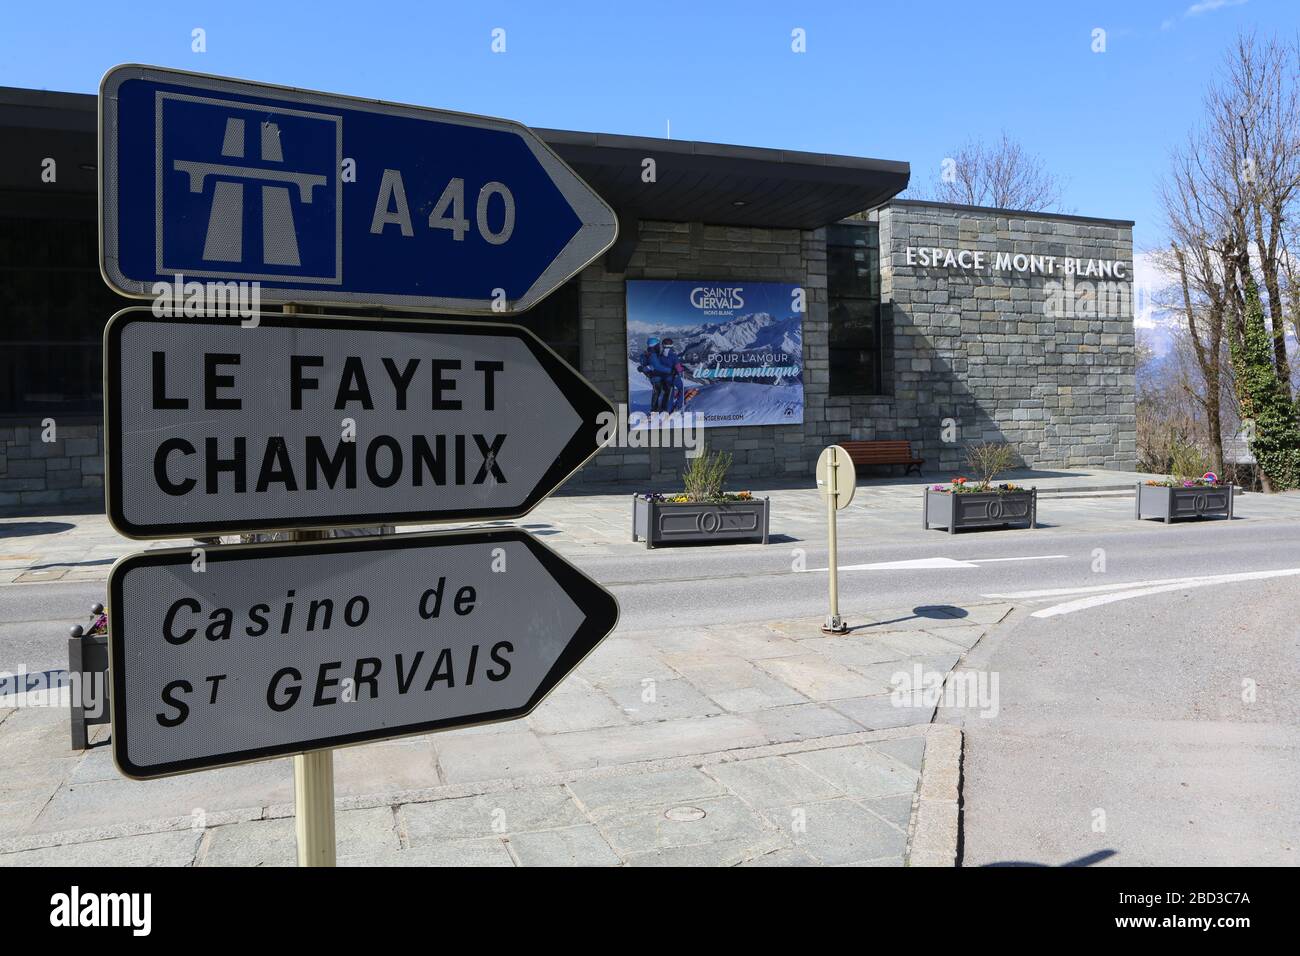 Panneau de signalisation routière : autoroute A40, Le Fayet, Chamonix, Casino de Saint-Gervais. Saint-Gervais-les-Bains. Haute-Savoie. France. Stock Photo